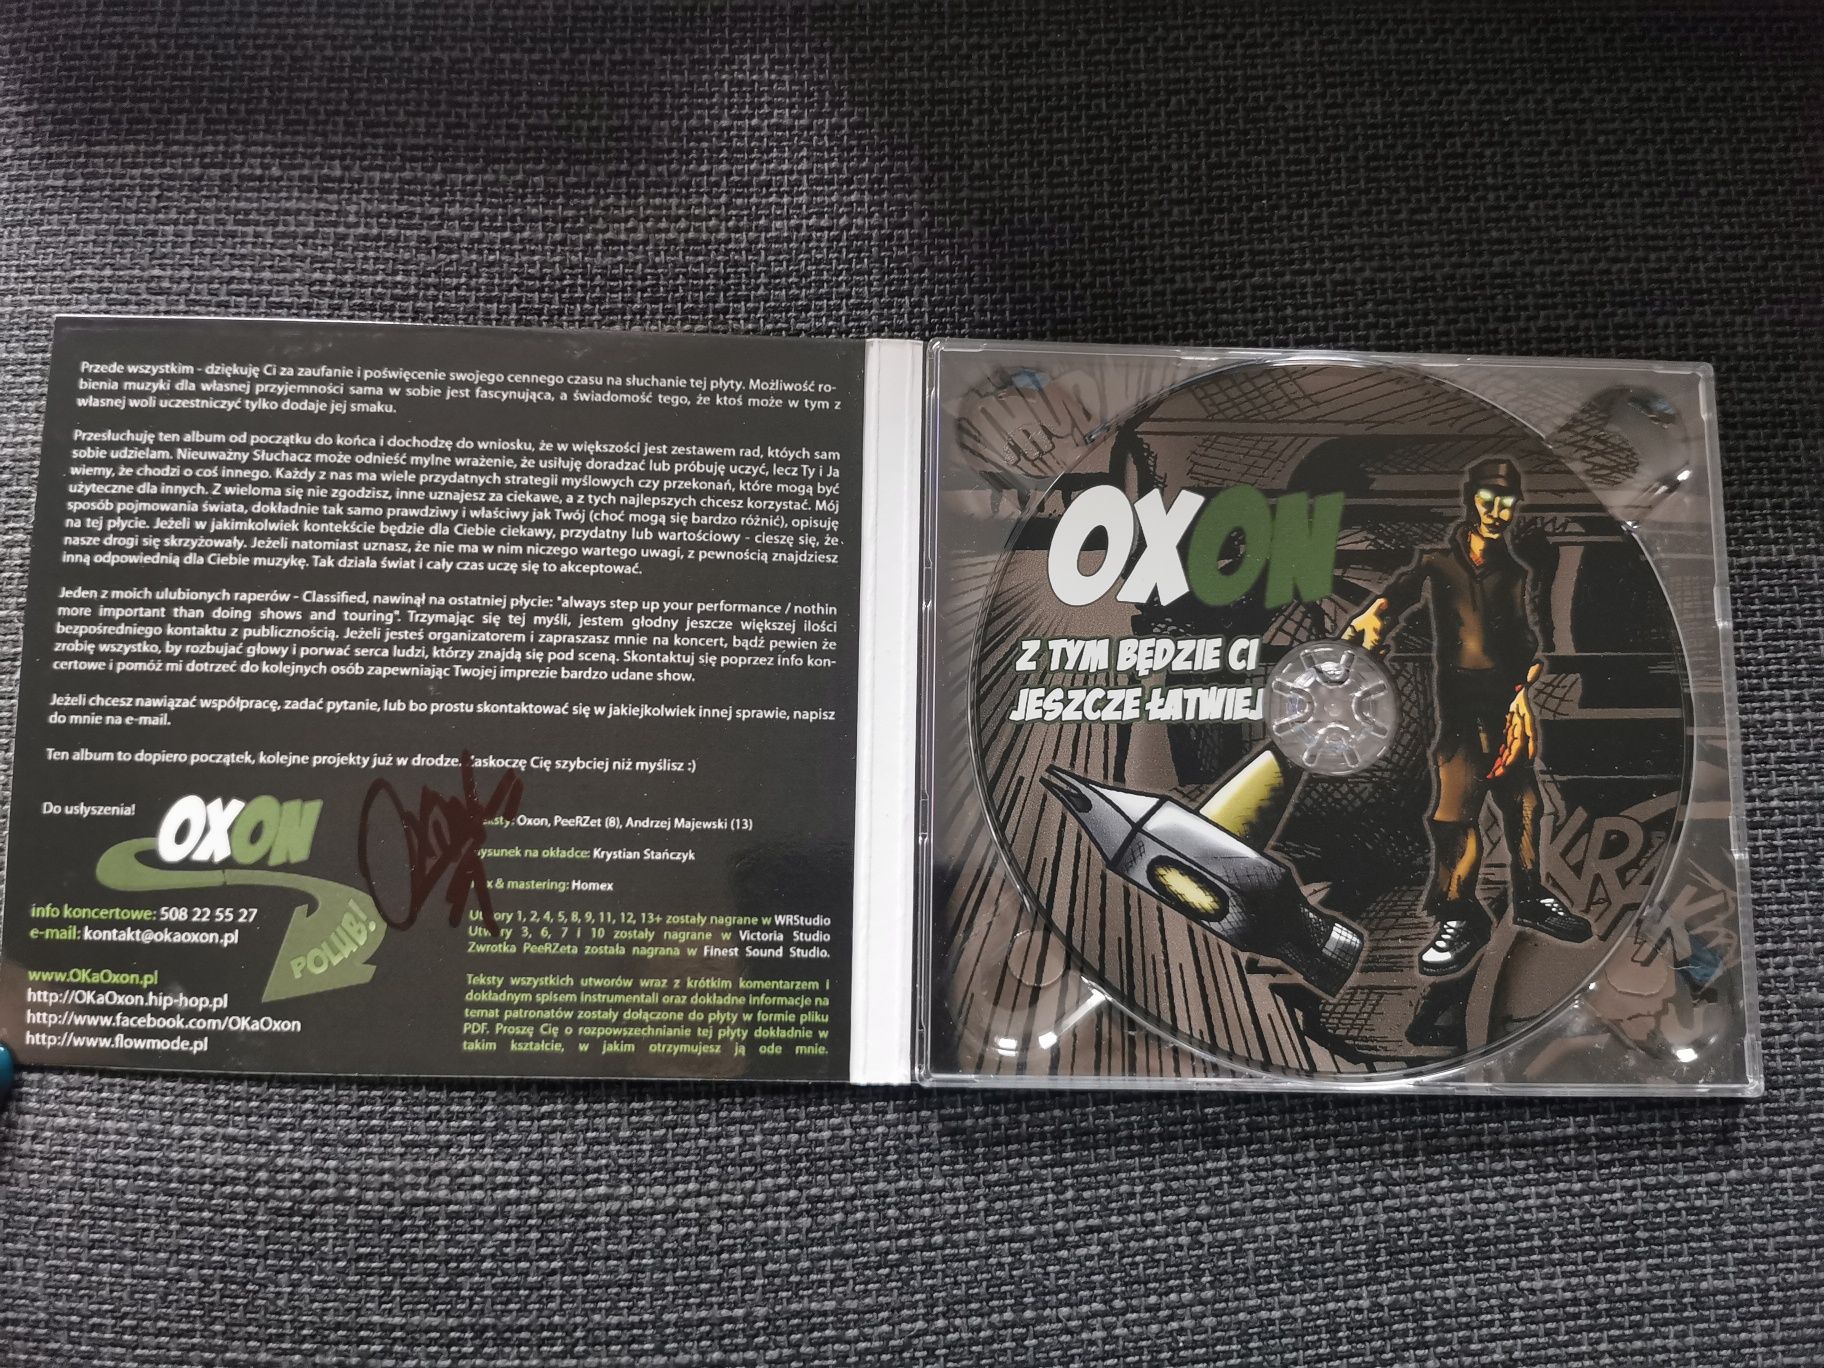 Płyta CD Oxon Z tym będzie Ci jeszcze łatwiej 1 wydanie